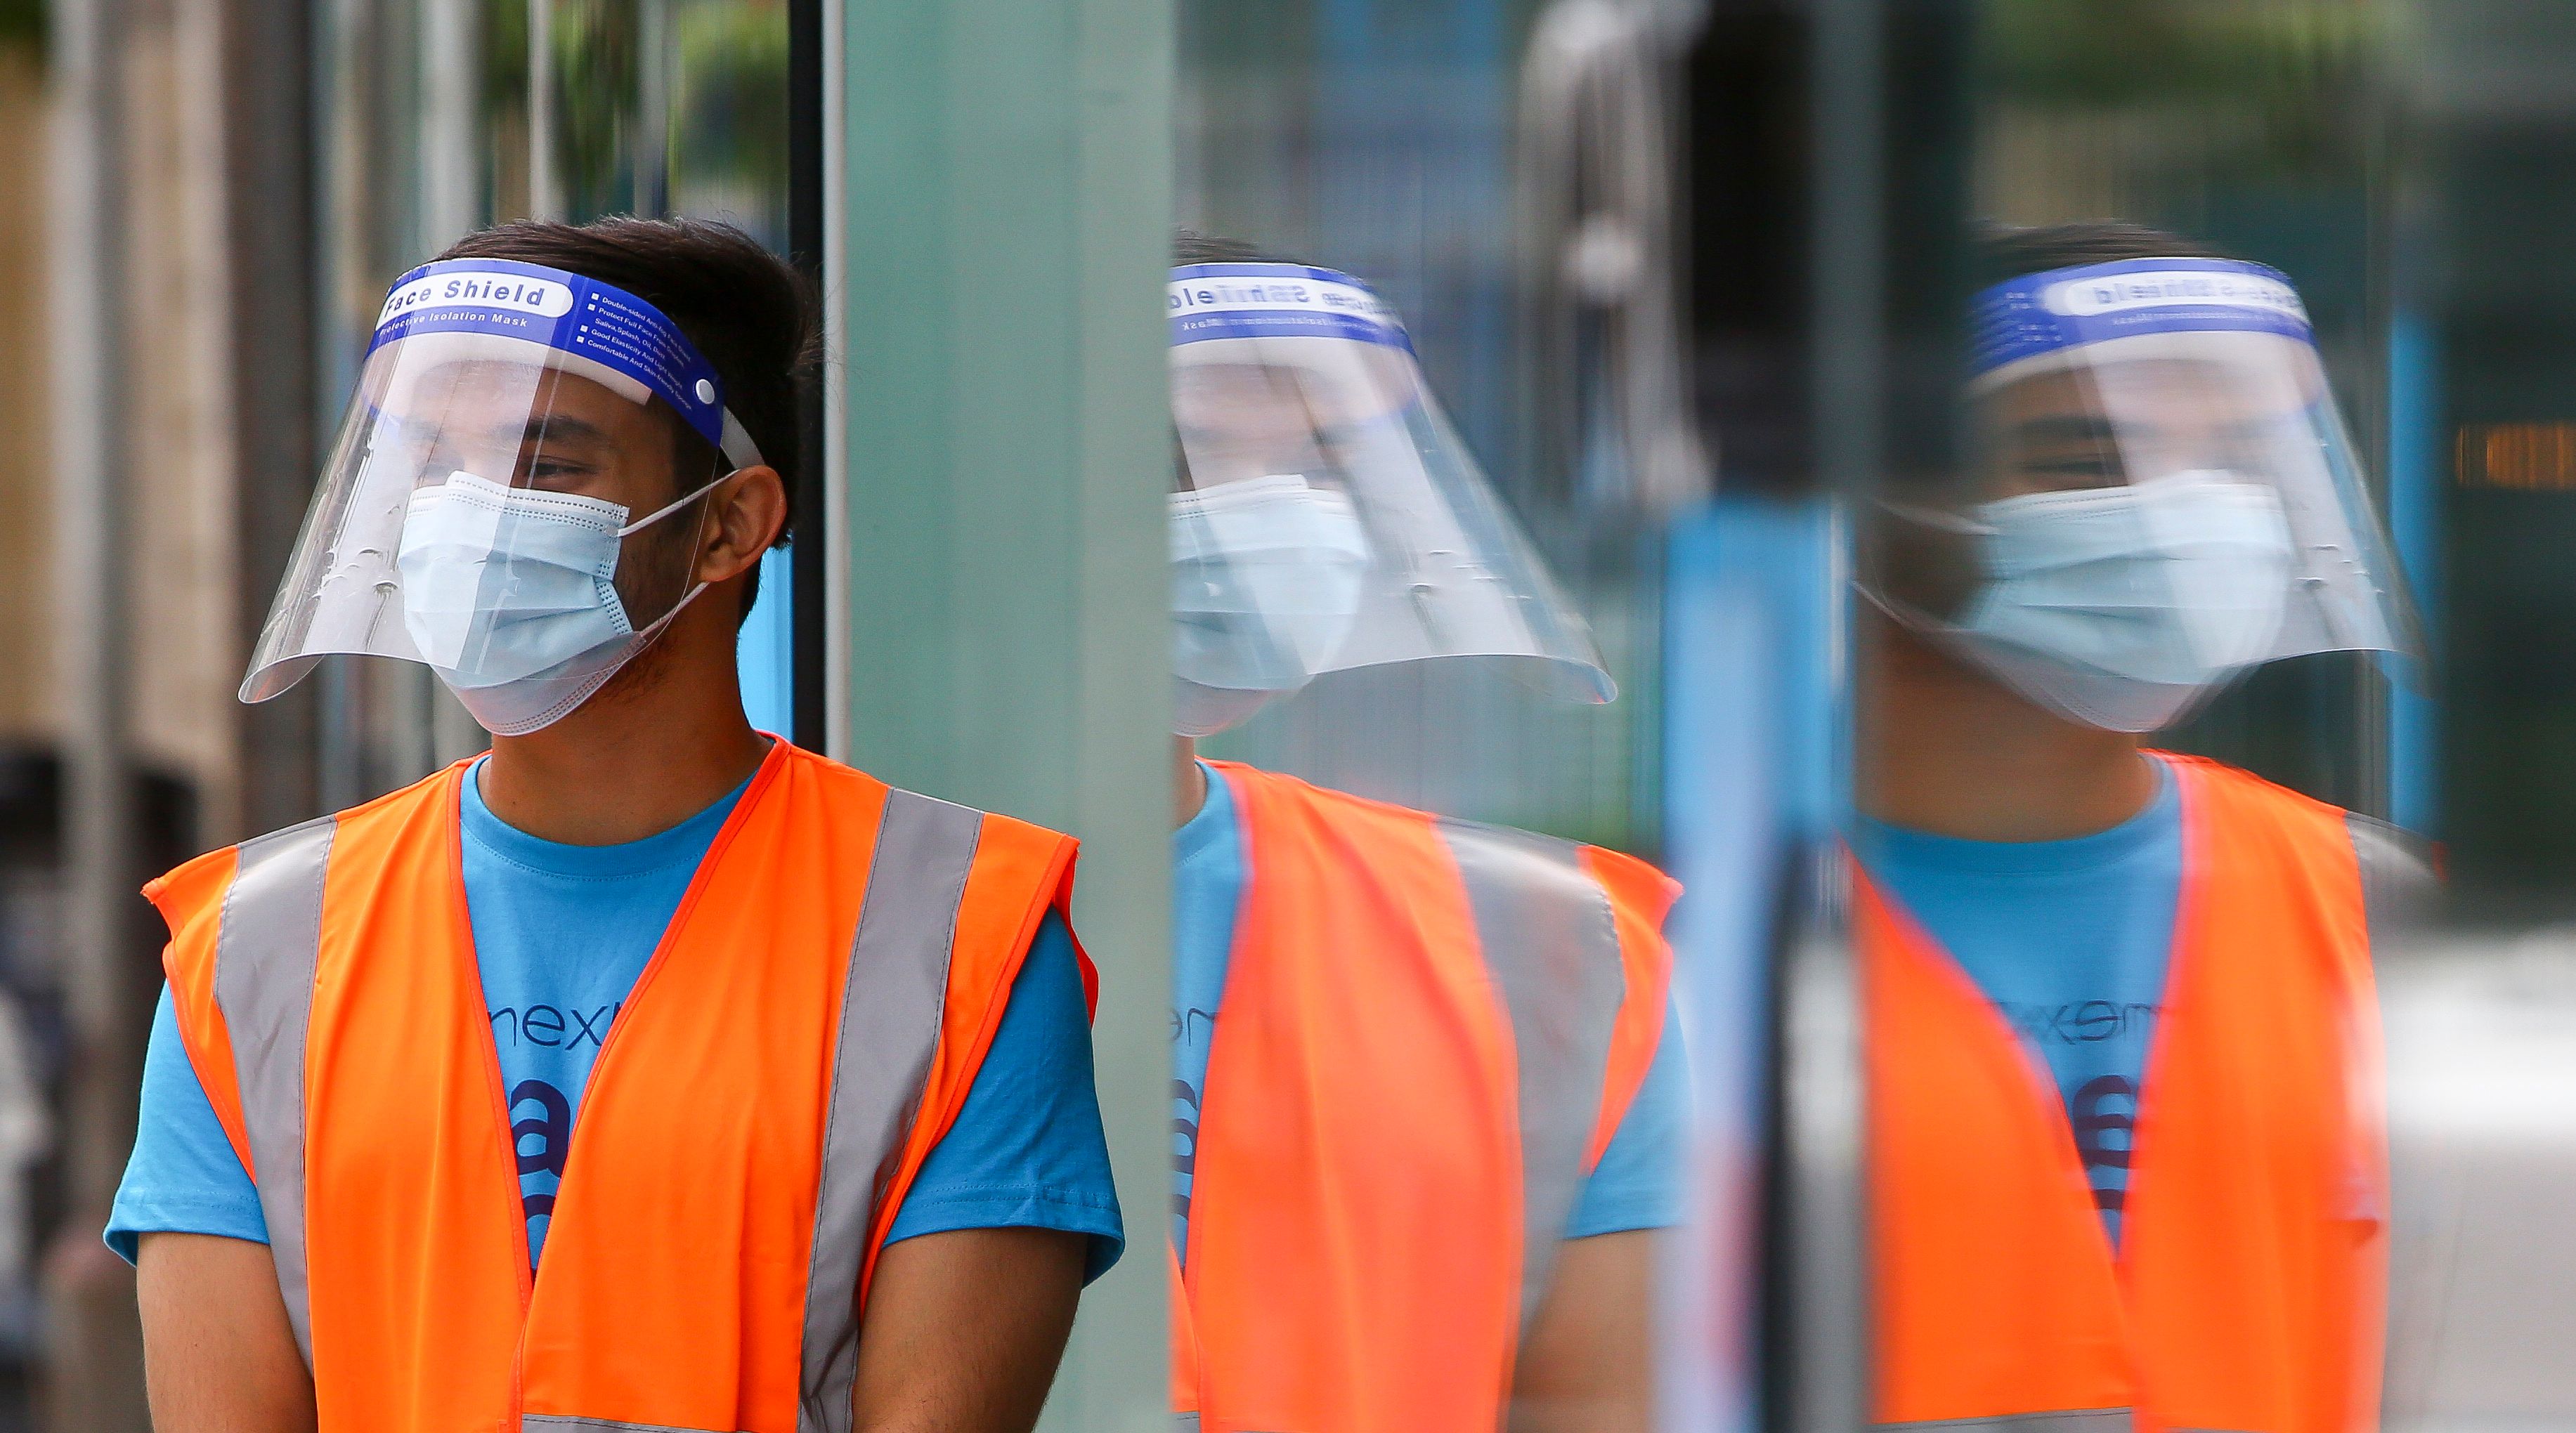 El uso de mascarillas y equipo de protección facial es necesario para prevenir contagios de coronavirus. (Foto Prensa Libre: AFP)